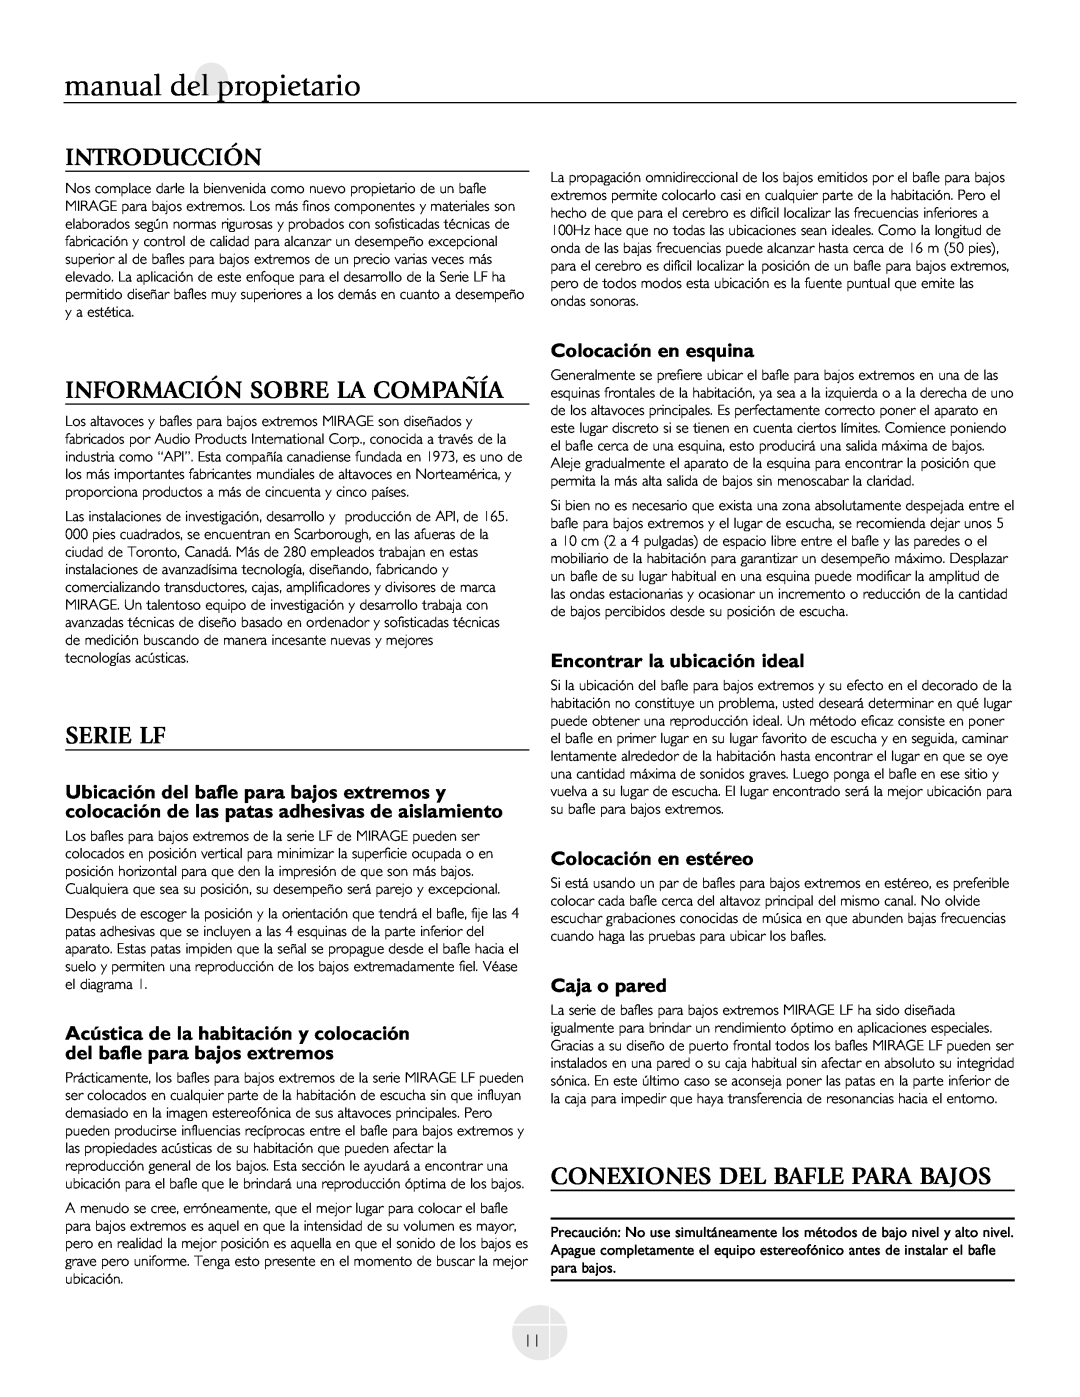 Mirage Loudspeakers LF-150, LF-100 Introducción, Información Sobre La Compañía, Serie Lf, Conexiones Del Bafle Para Bajos 